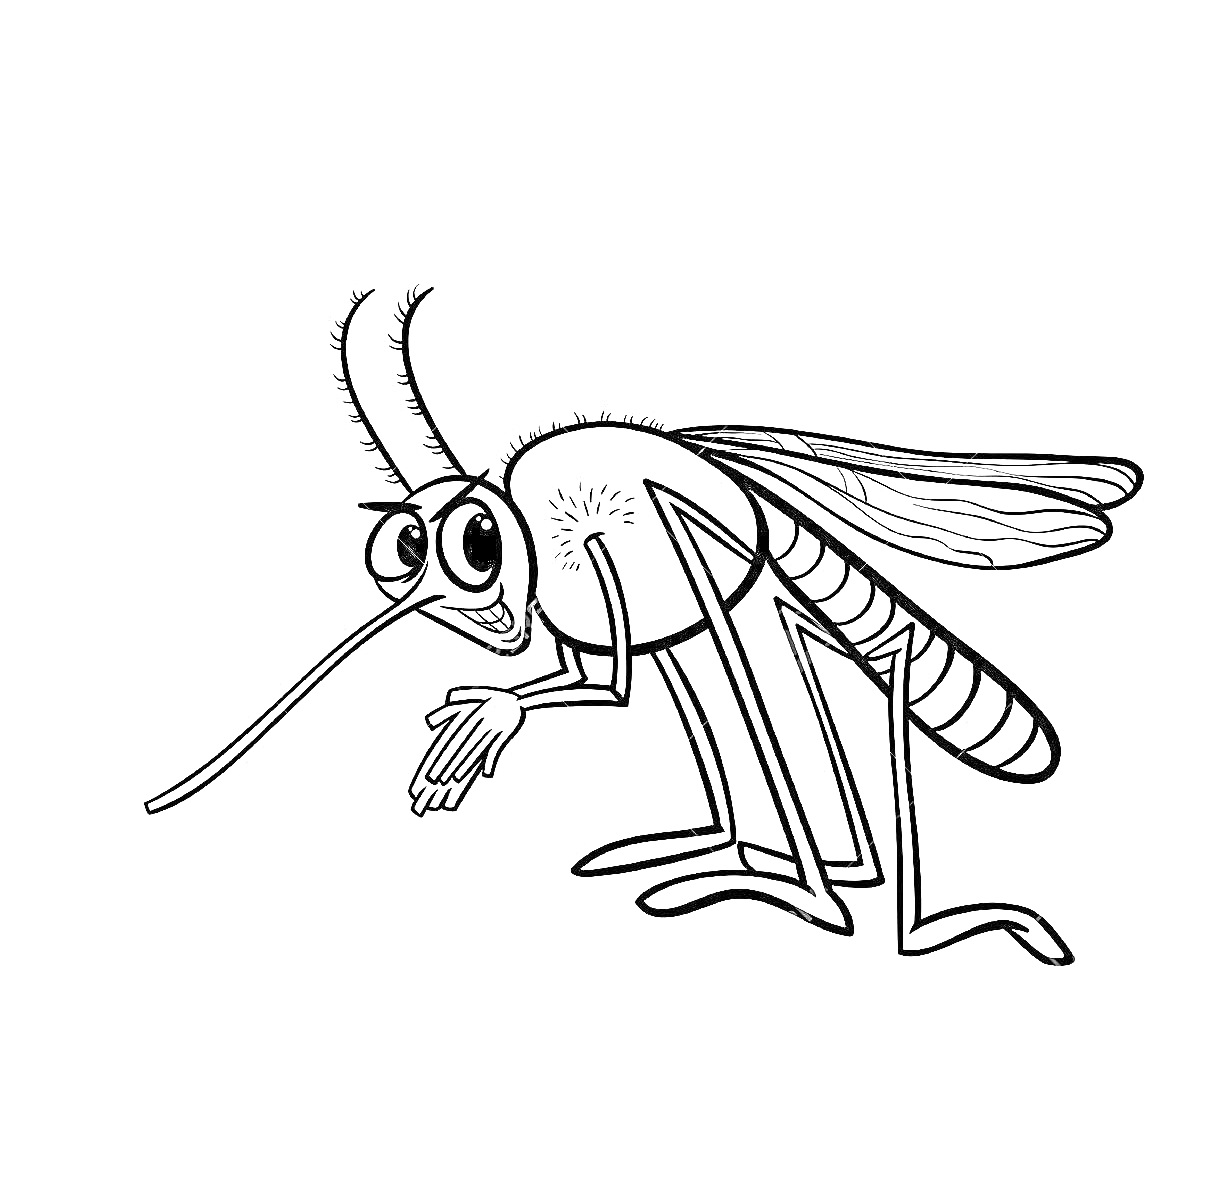 Комар с длинным хоботком, большими глазами и тонкими ногами